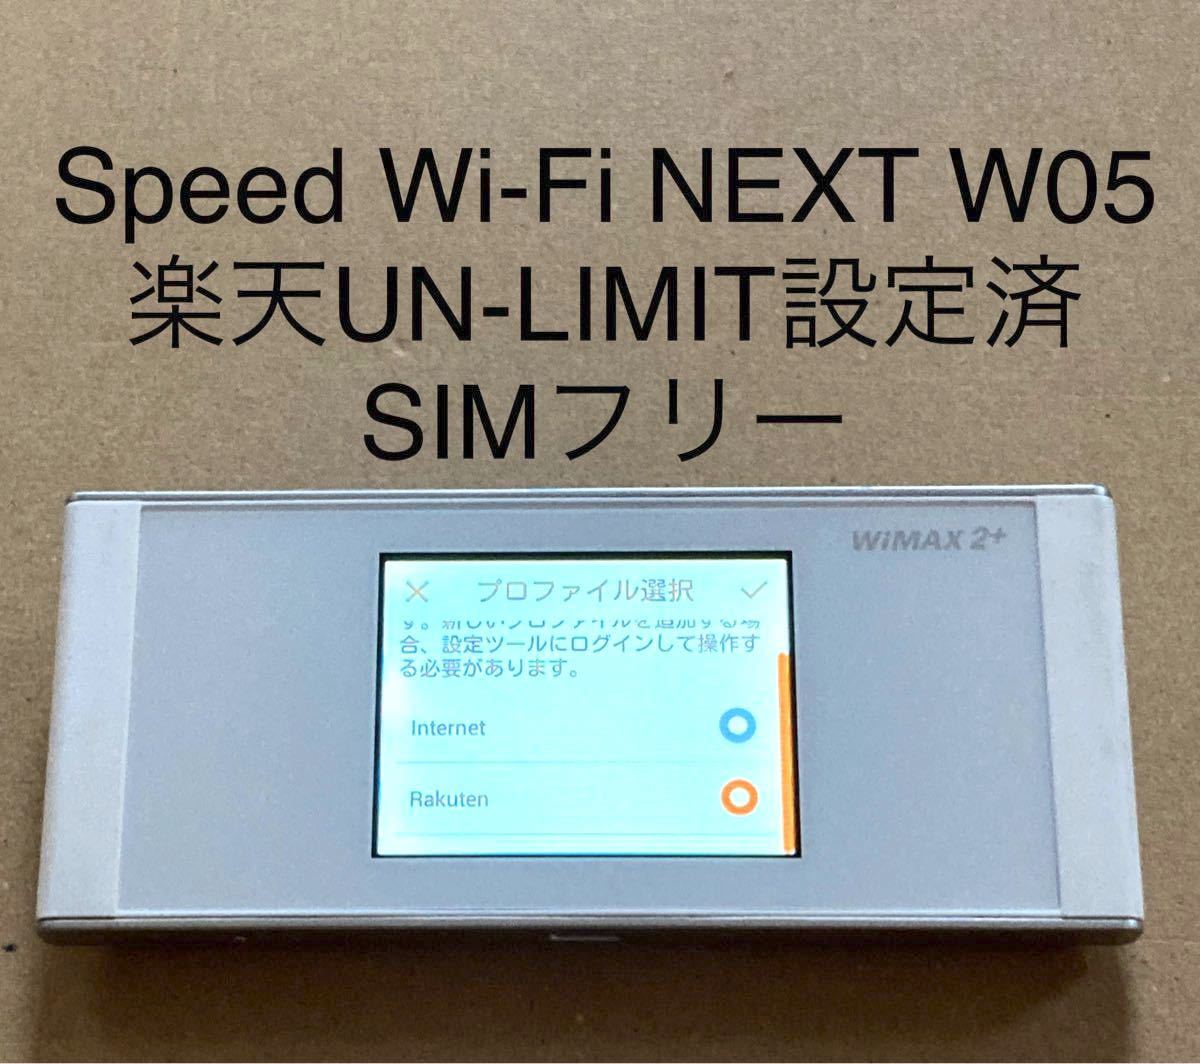 Speed Wi-Fi NEXT W05   楽天UN-LIMIT設定済 SIMフリー 